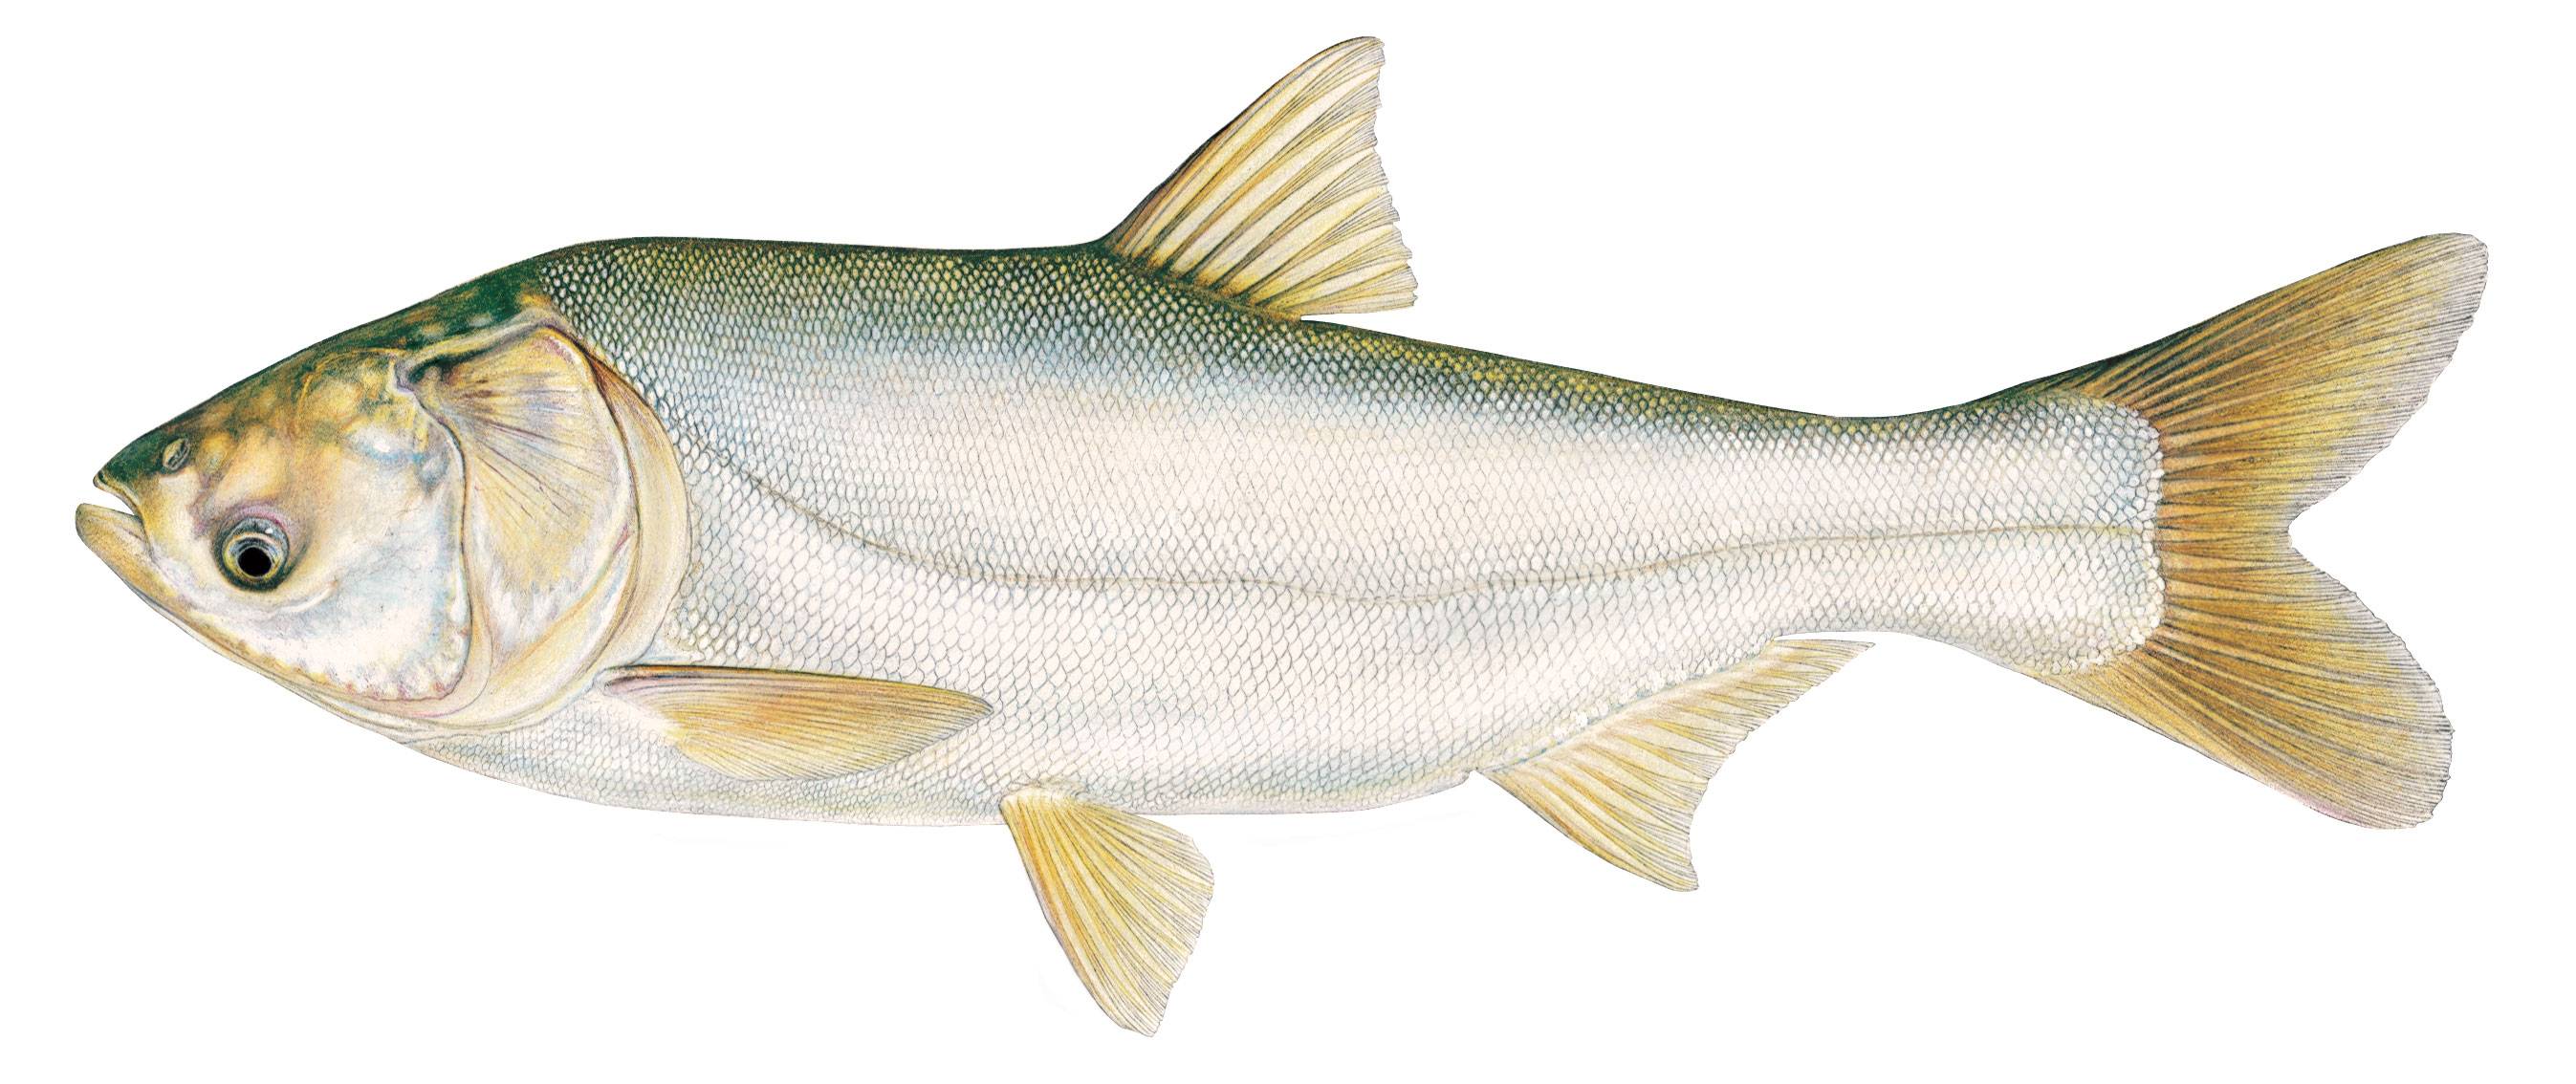 Толстолобик: польза и вред. костлявая или нет эта рыба, как ее приготовить?